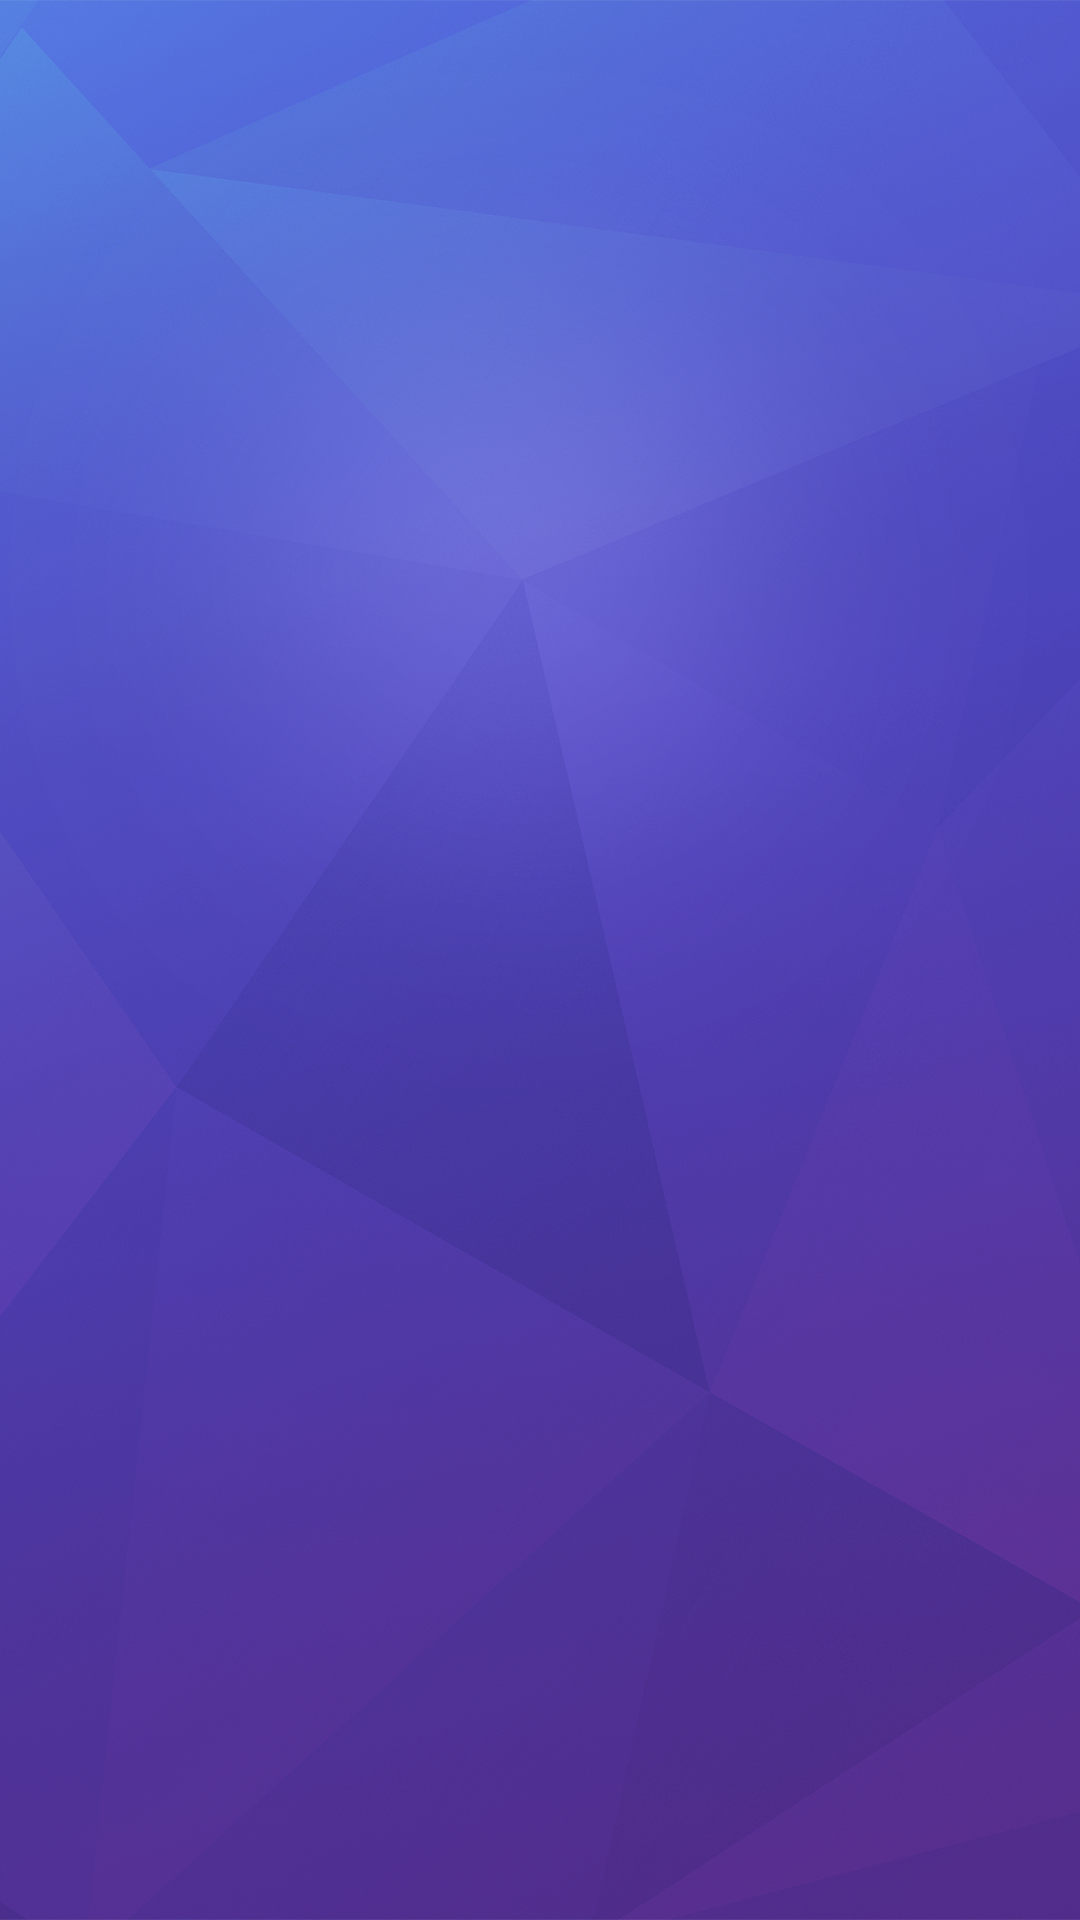 nota 5 fondo de pantalla,azul,violeta,púrpura,azul cobalto,lila